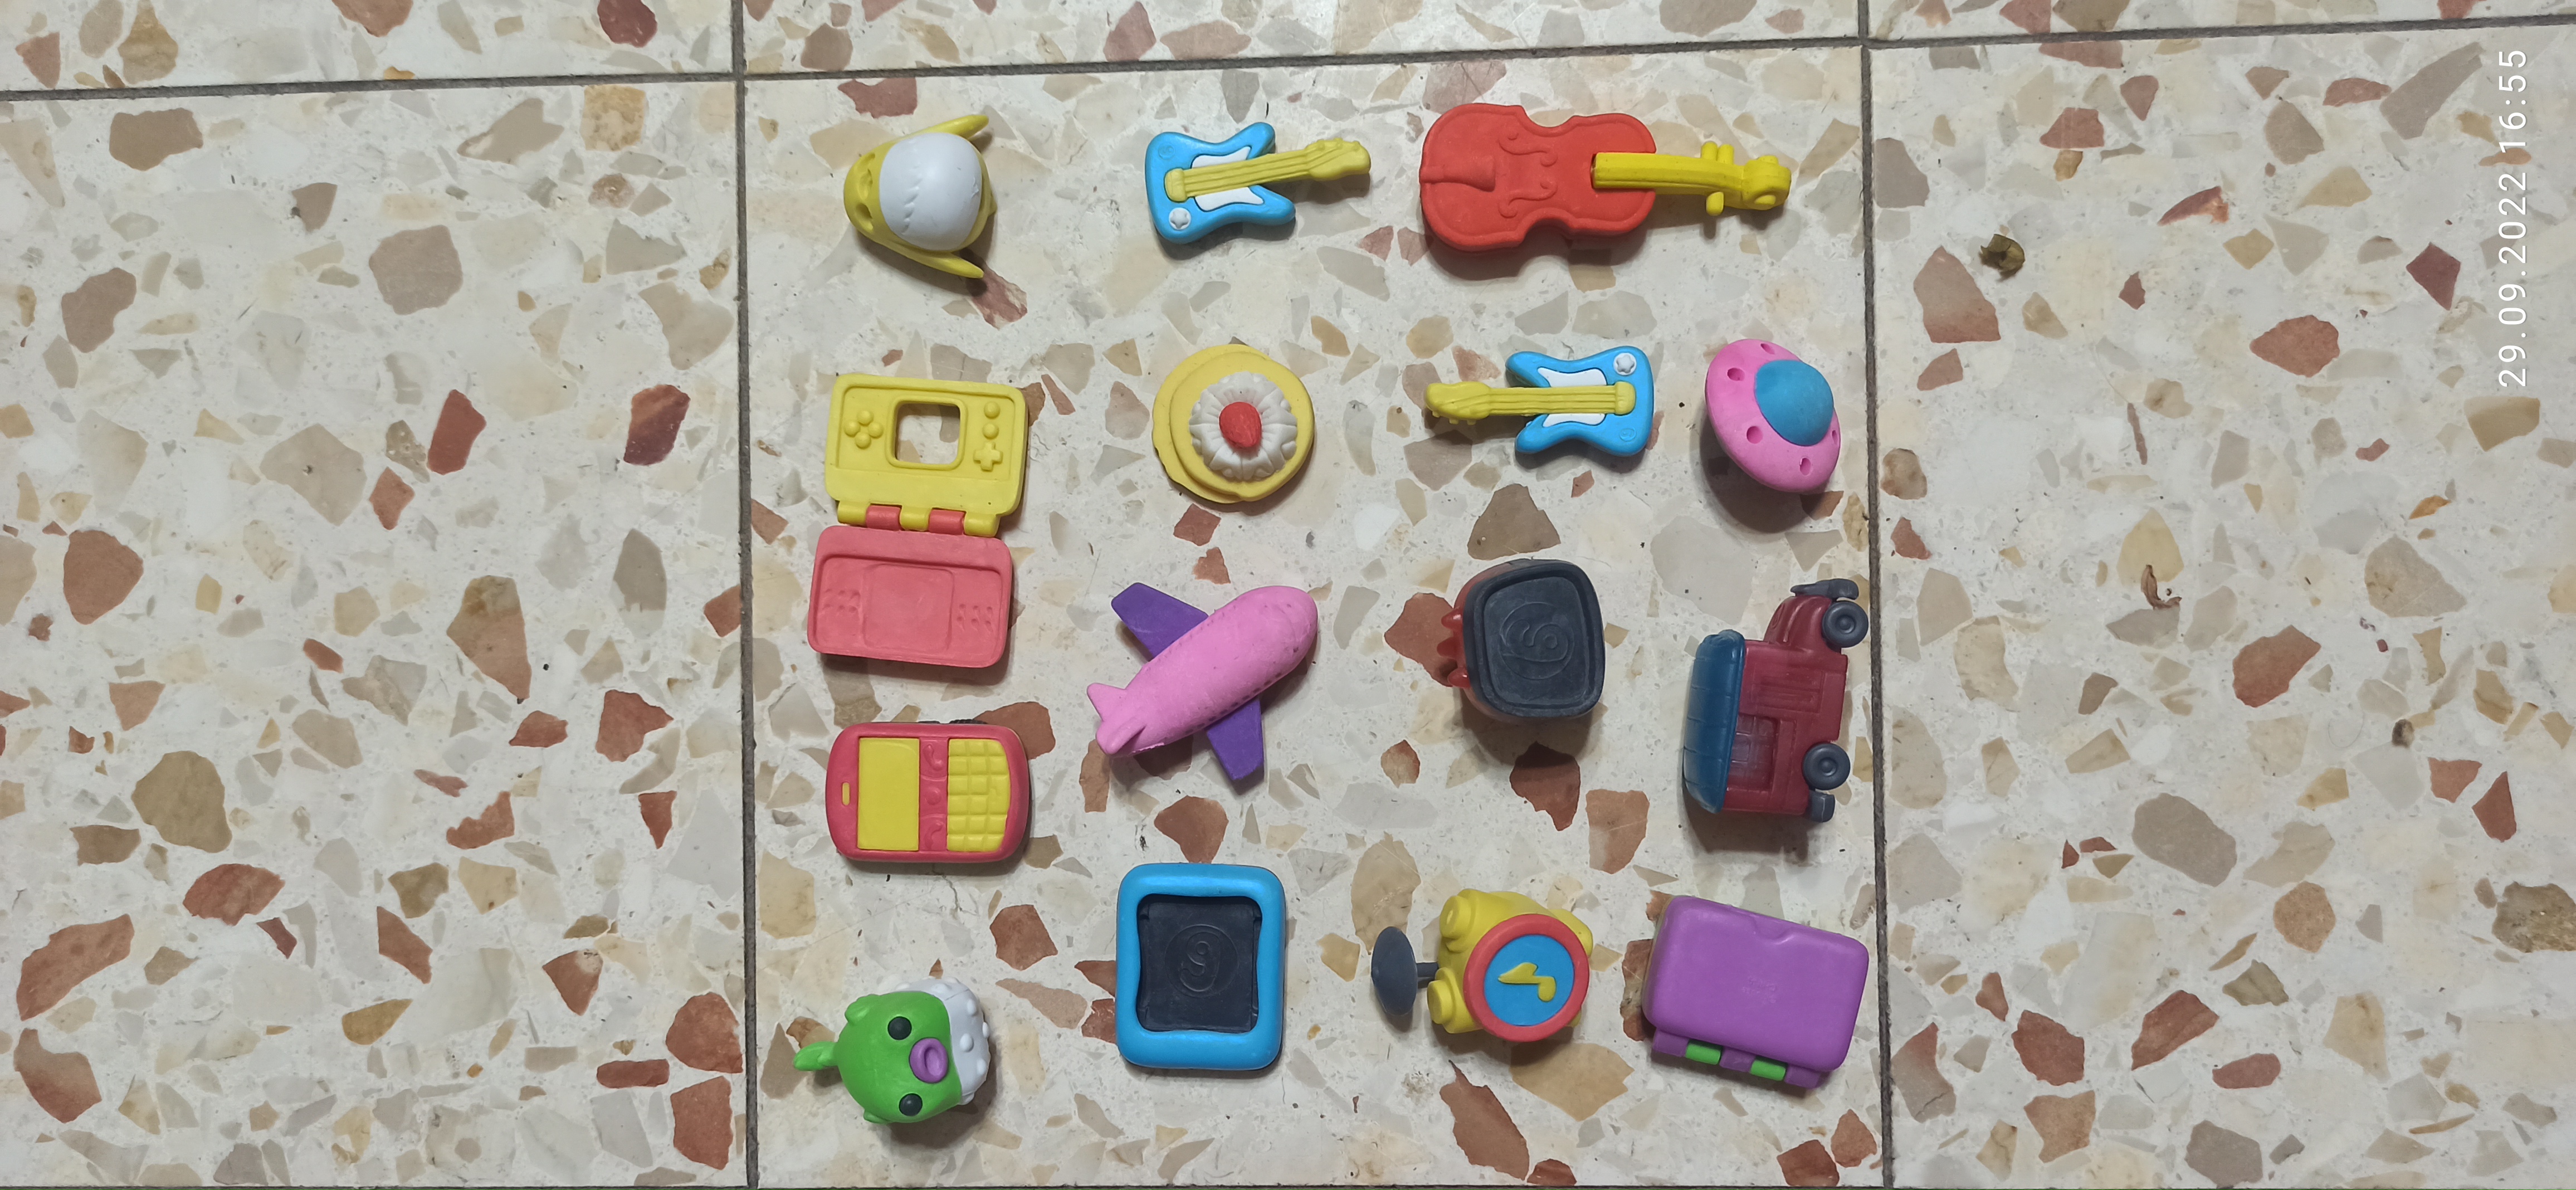 תמונה 2 ,צעצועים קטנים  למכירה ביבנה לתינוק ולילד  משחקים וצעצועים